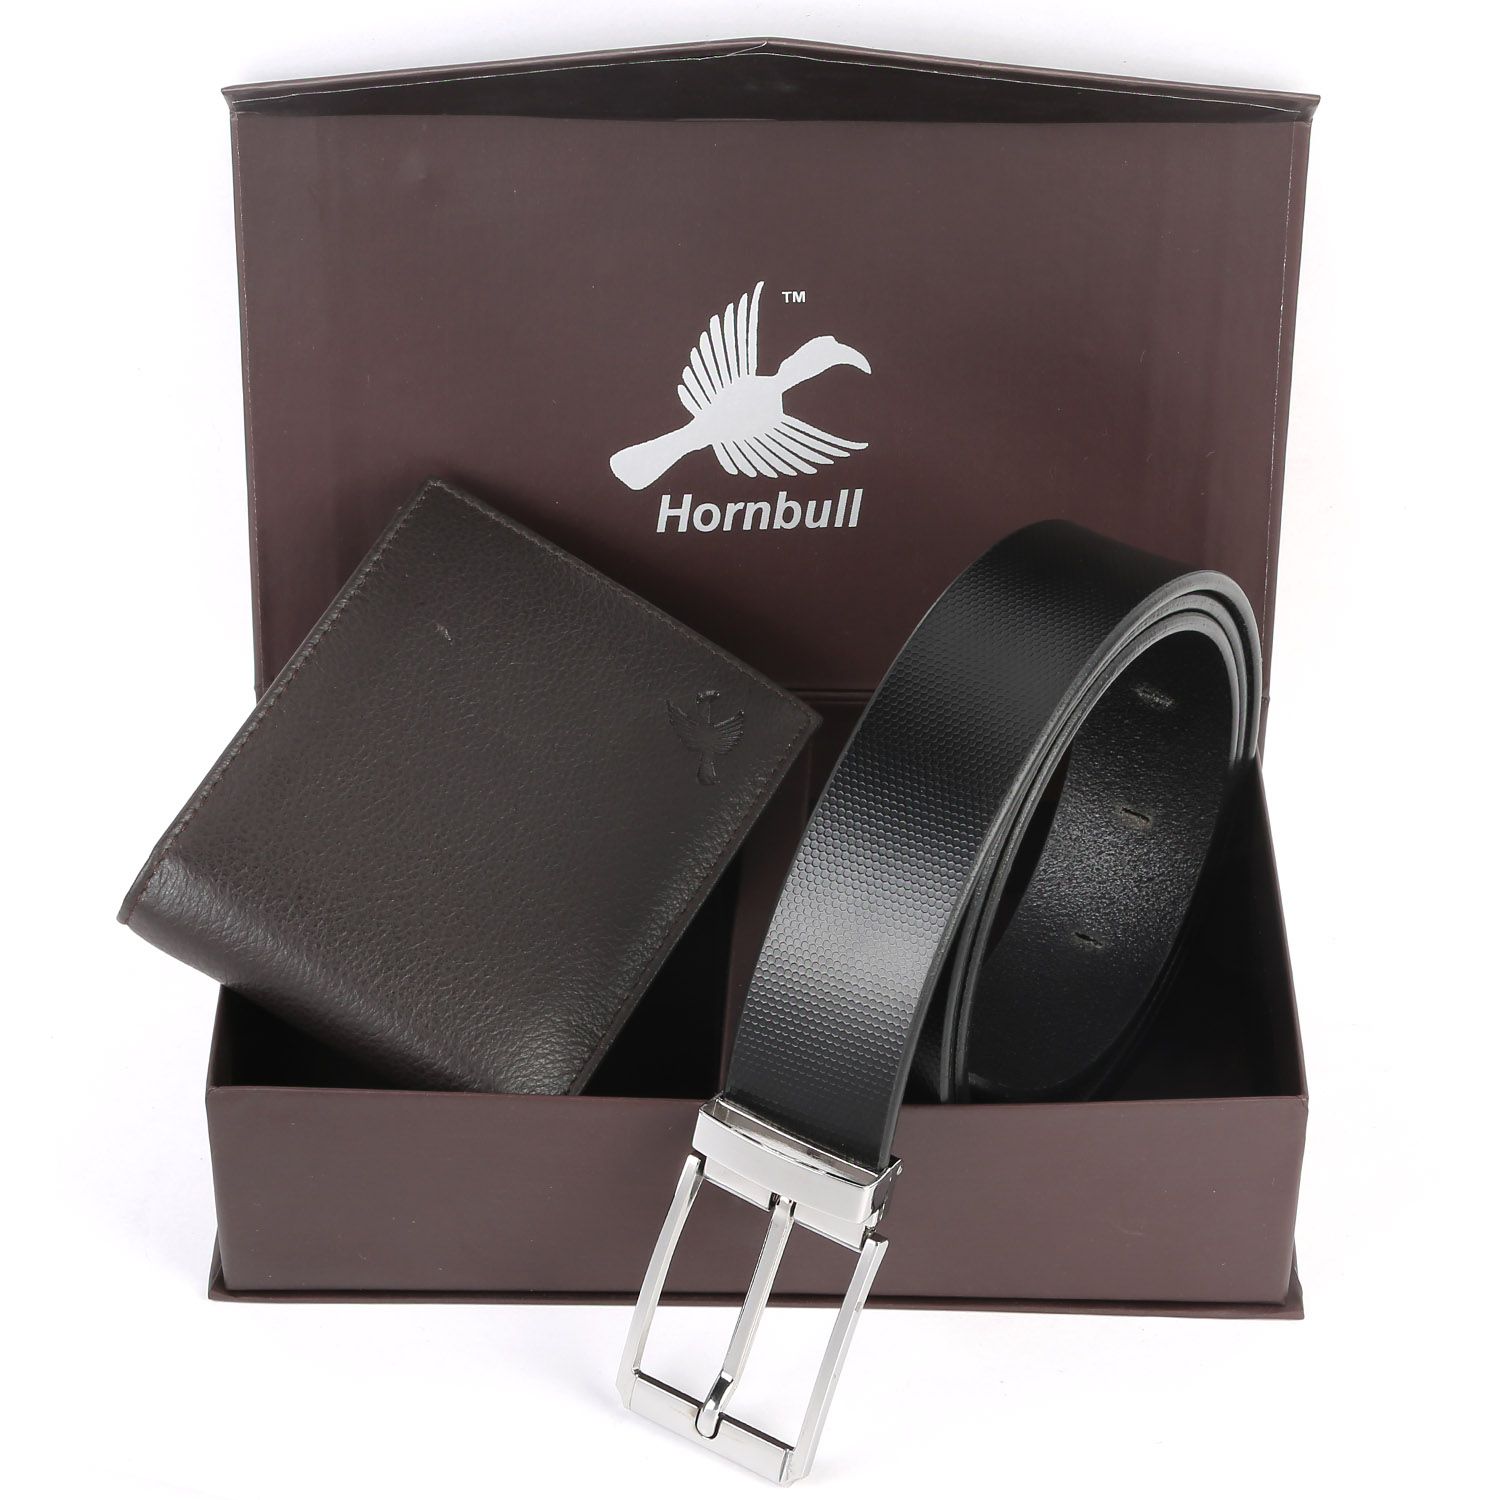 Hornbull Brown Wallet and Belt Diwali Gift Set for Men: Buy Online at ...